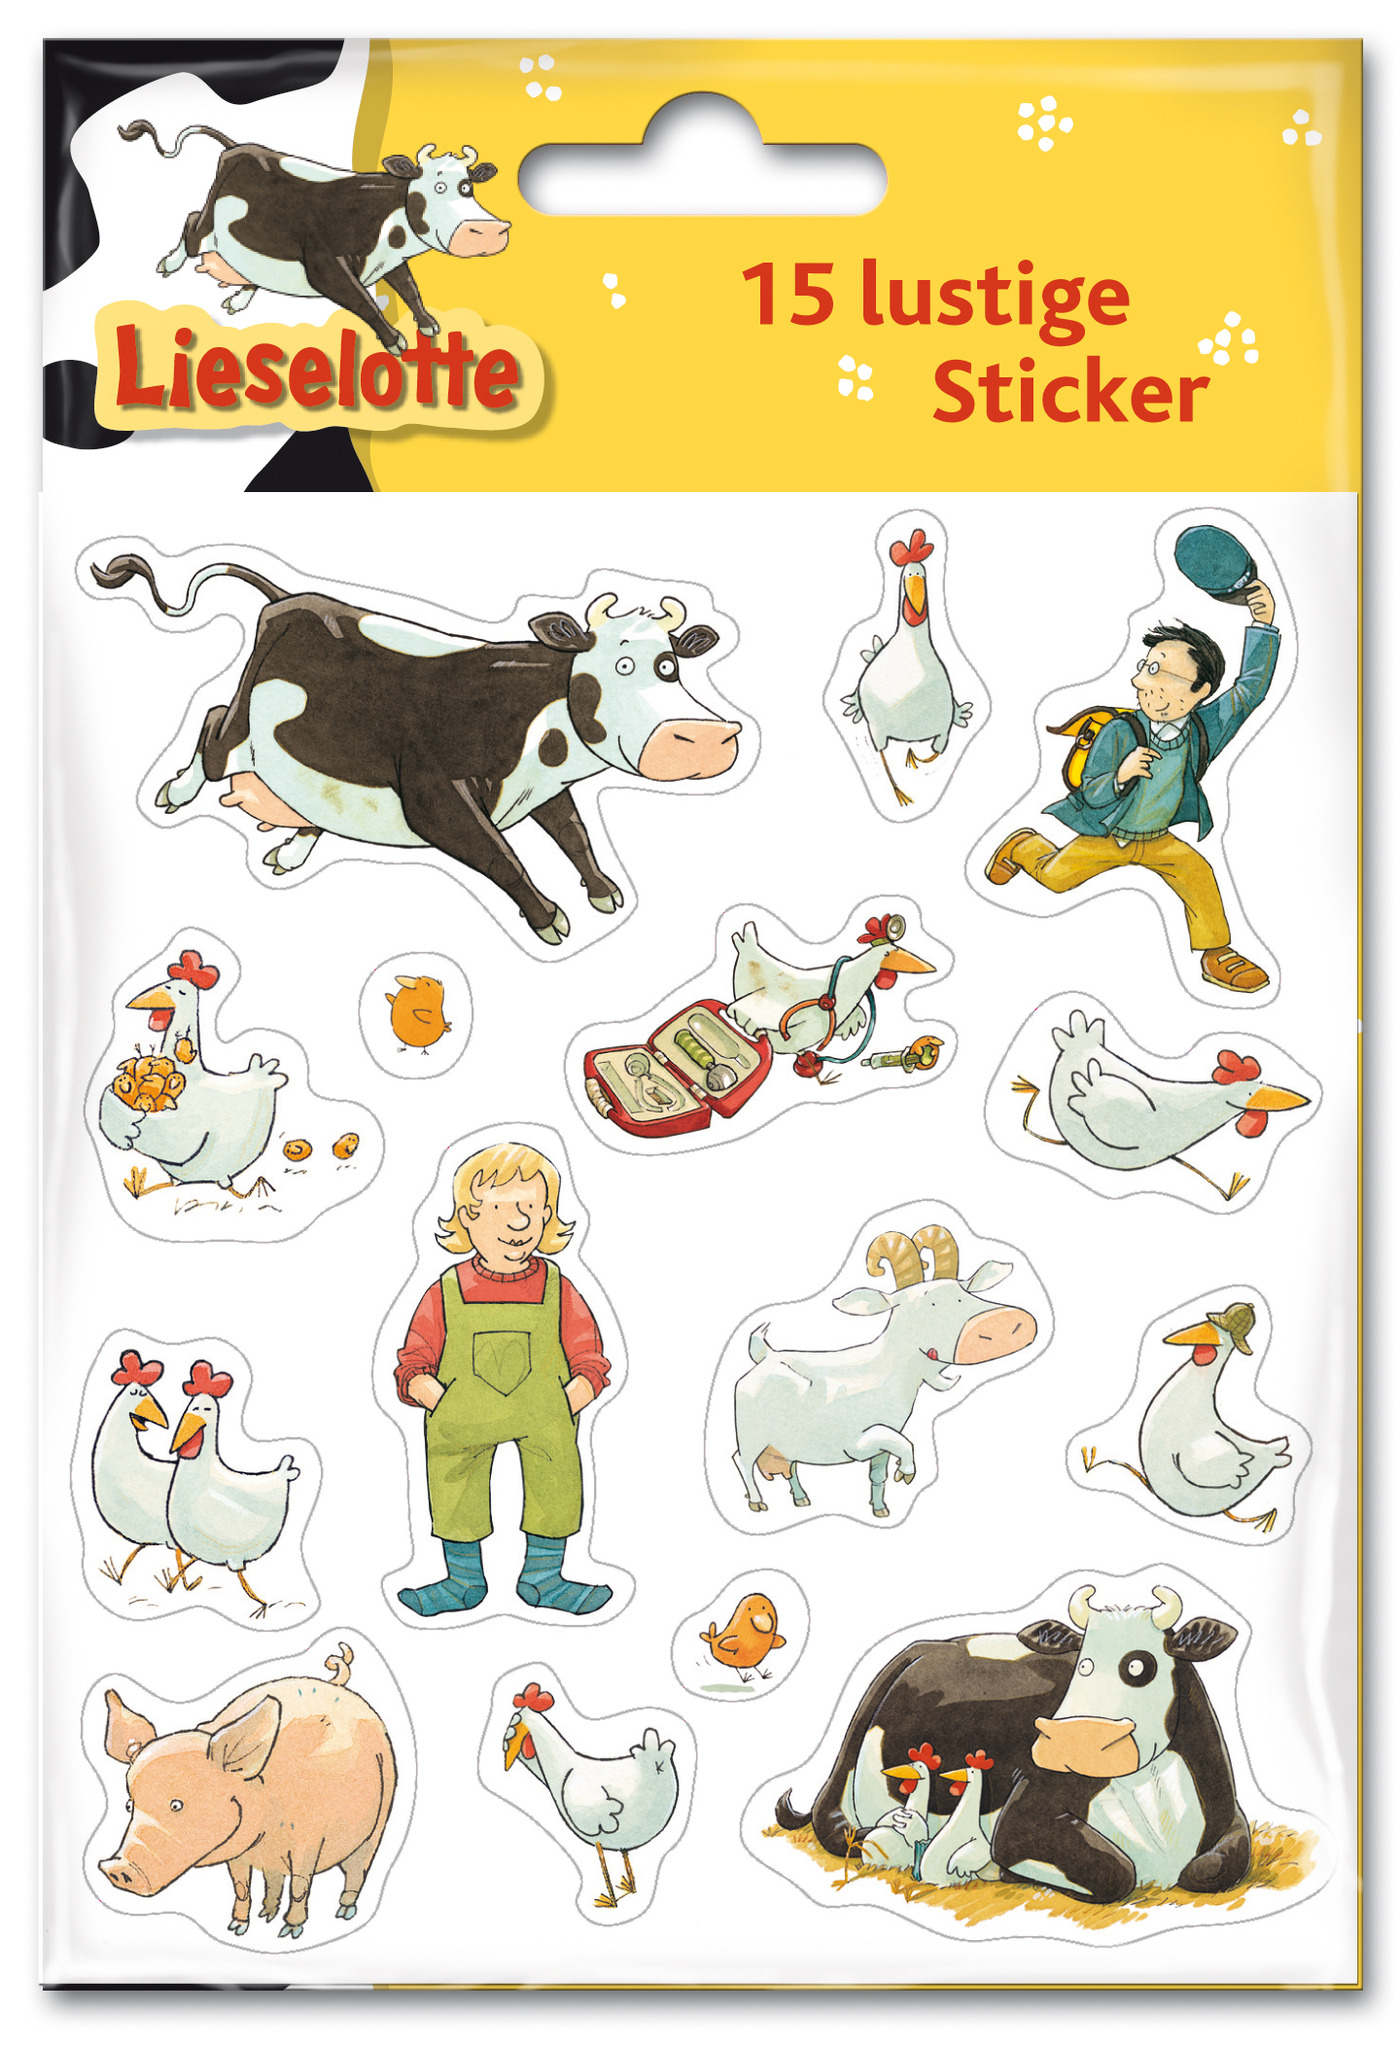 Lieselotte Sticker - Alexander Steffensmeier